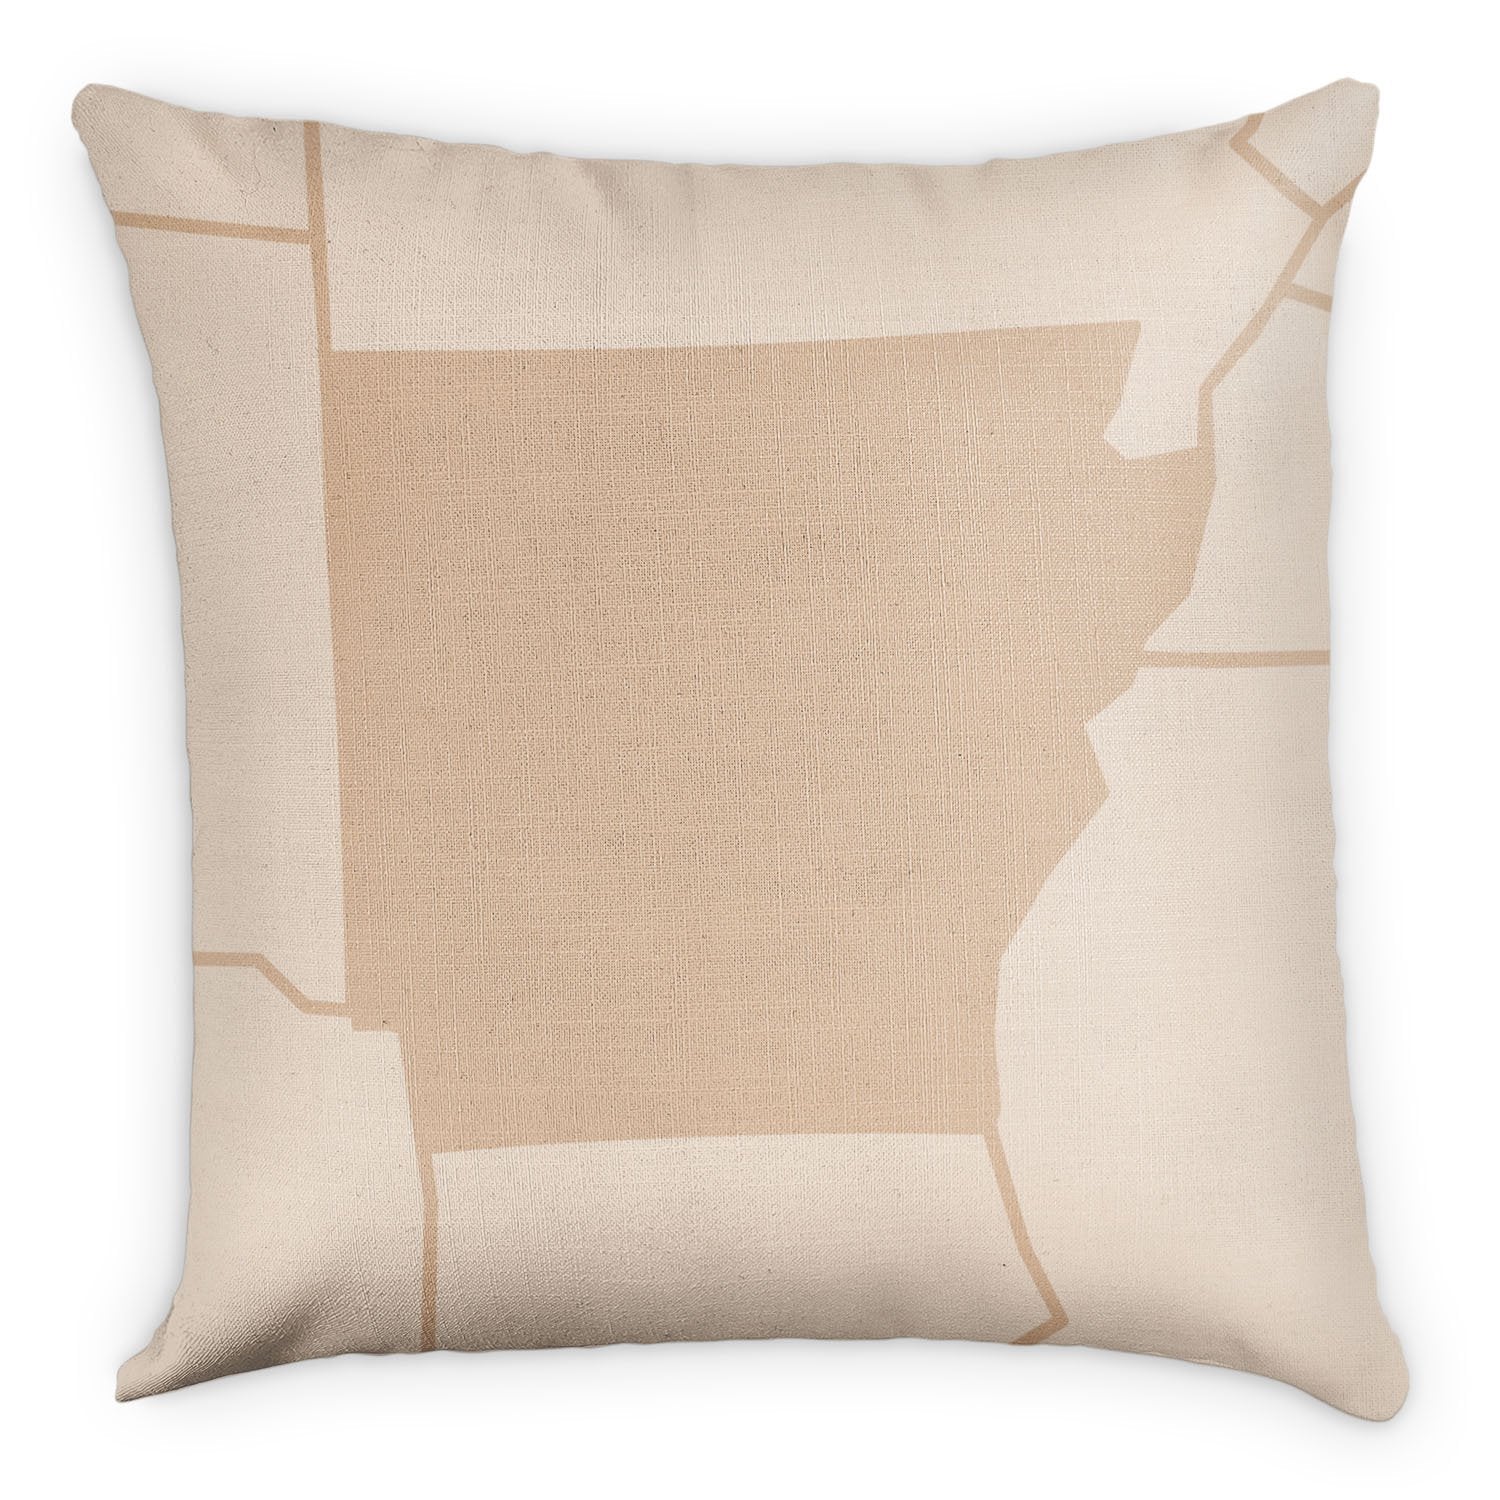 Arkansas Square Pillow - Linen -  - Knotty Tie Co.